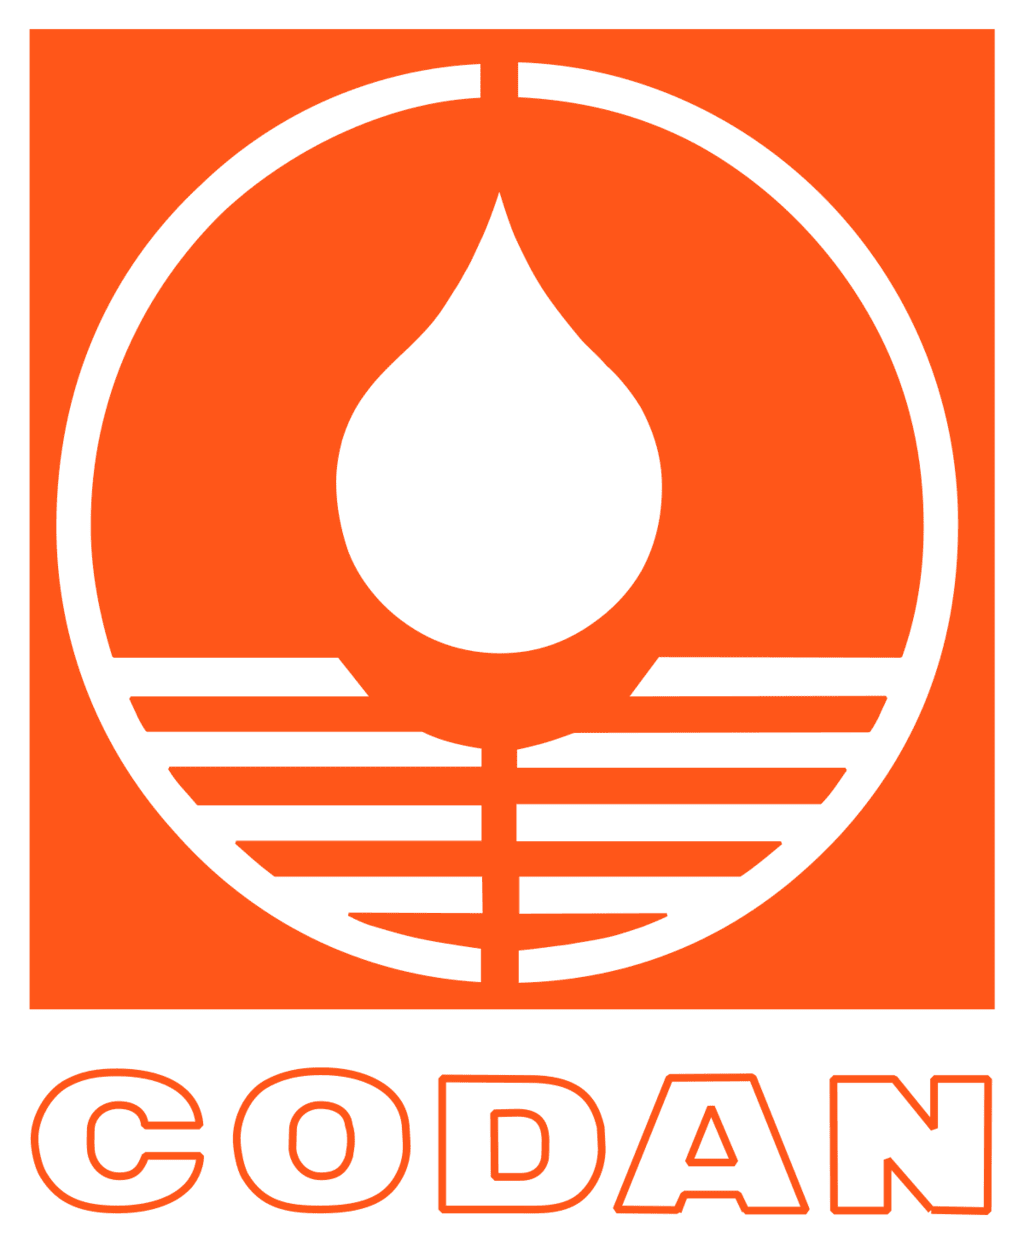 CODAN pvb Critical Care GmbH